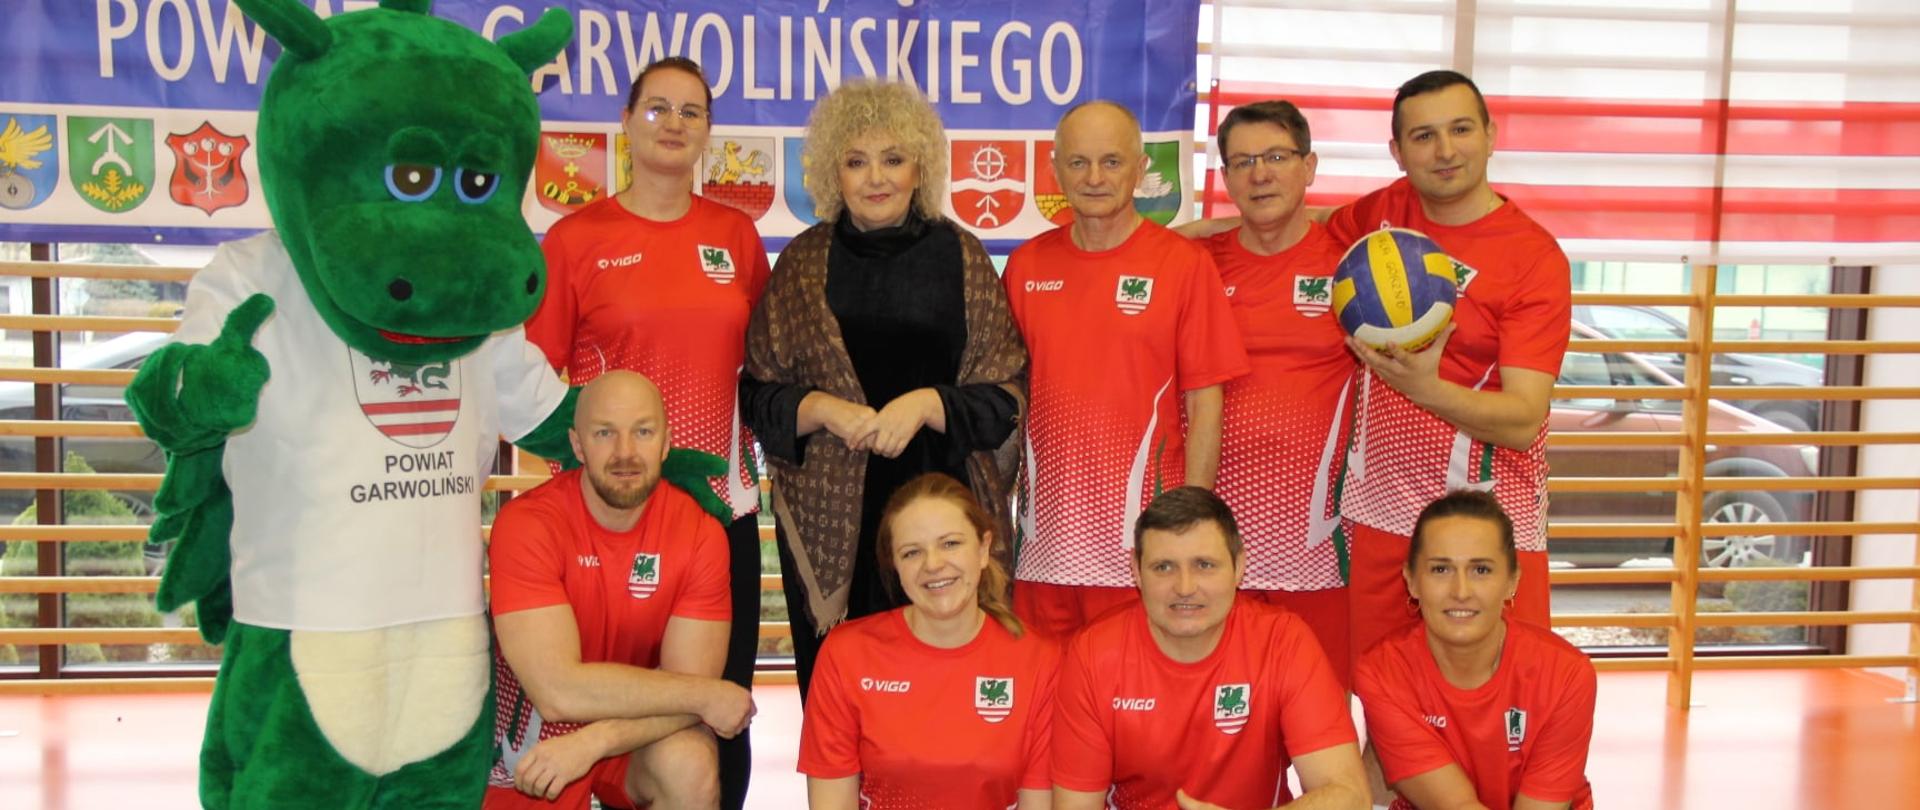 XX Samorządowy Turniej Piłki Siatkowej Samorządowców z Powiatu Garwolińskiego - drużyna Powiat Garwoliński
